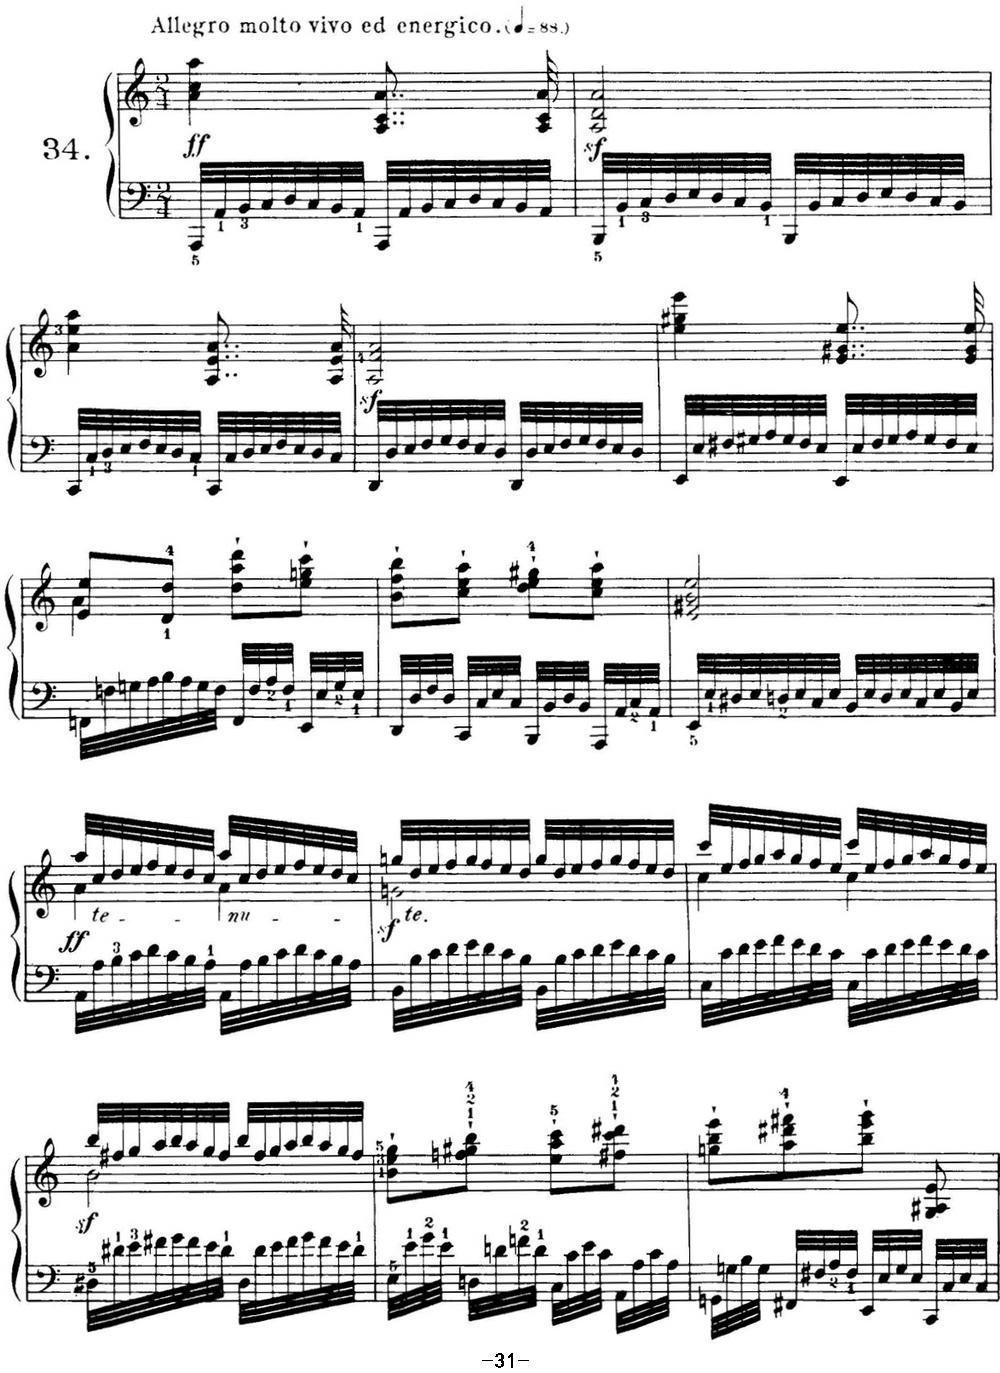 车尔尼599第34条钢琴谱图片